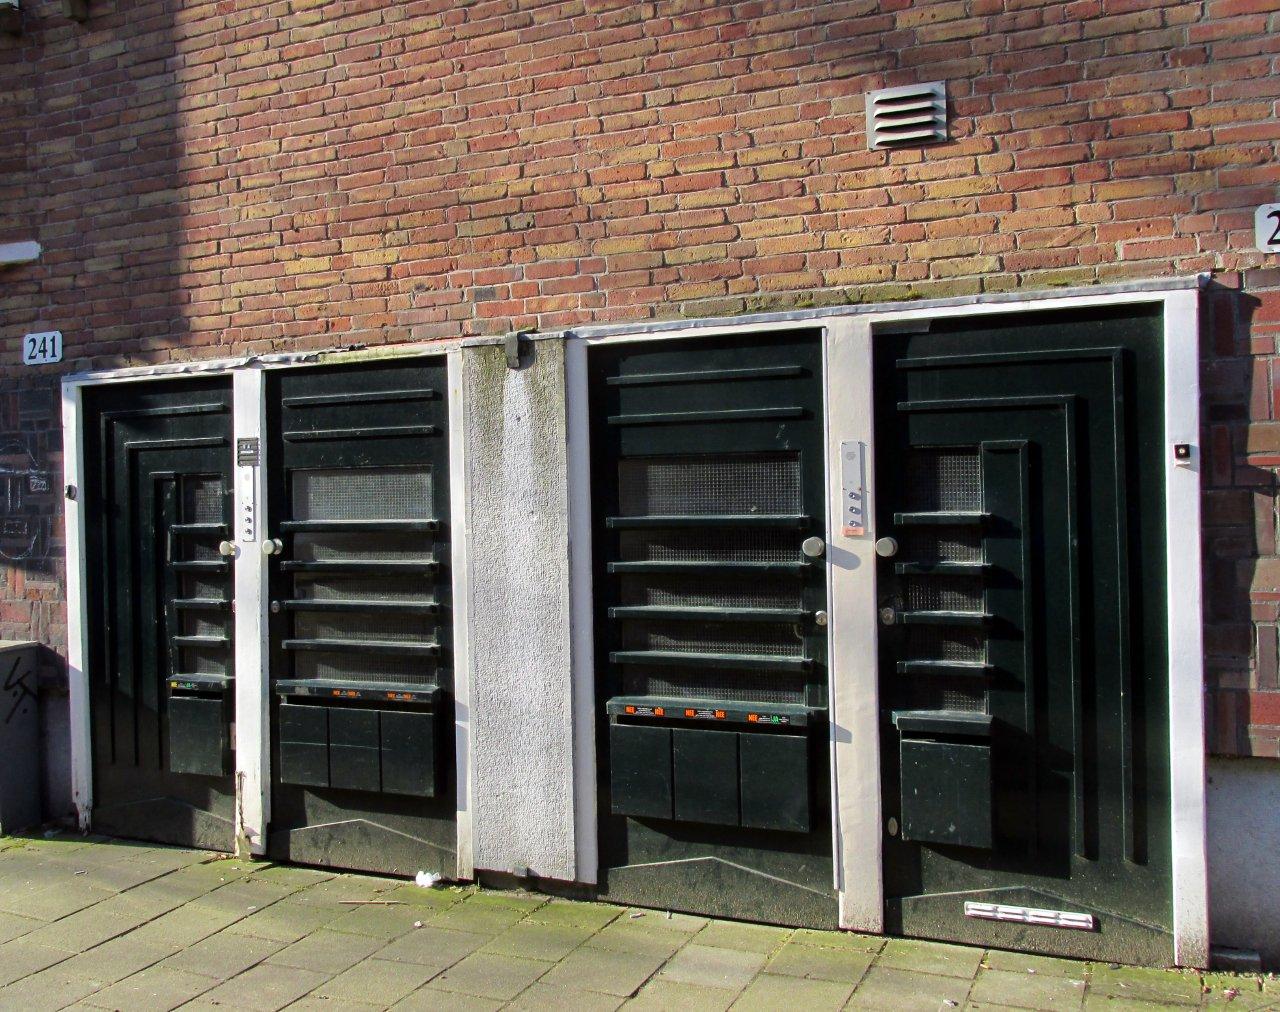 Orteliusstraat. M. Kropholler plaatste deuren in paren en verbond ze door de lijnen.